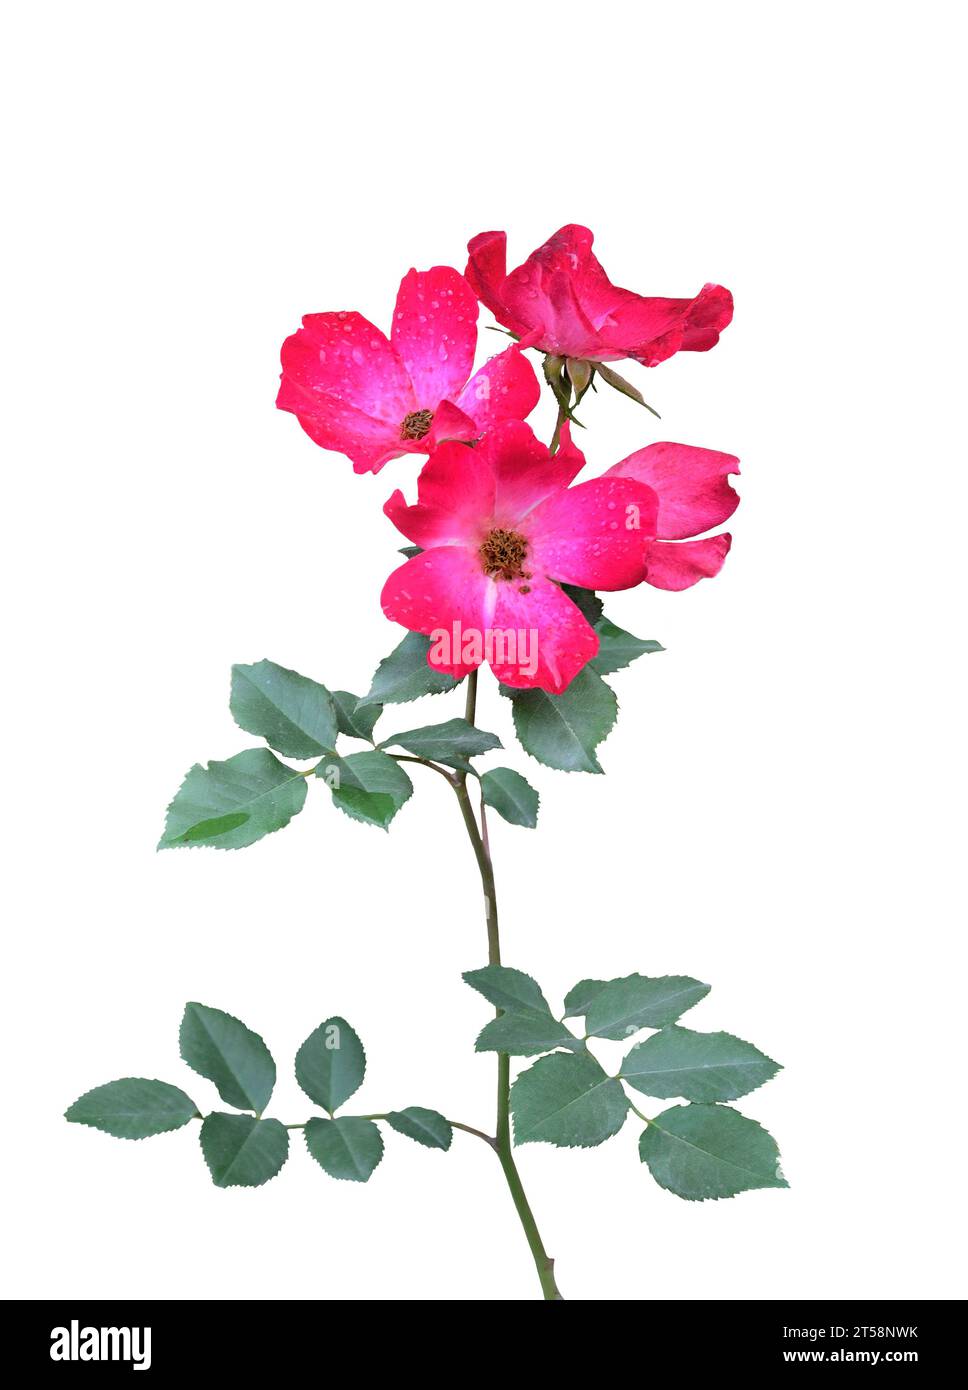 Brindille fleurie de rose hip, chien-rose ou chancre-rose, églantine, briar ou rosa canina avec des fleurs rouges et des feuilles vert-bleu se rapprochent, isolé sur WHI Banque D'Images